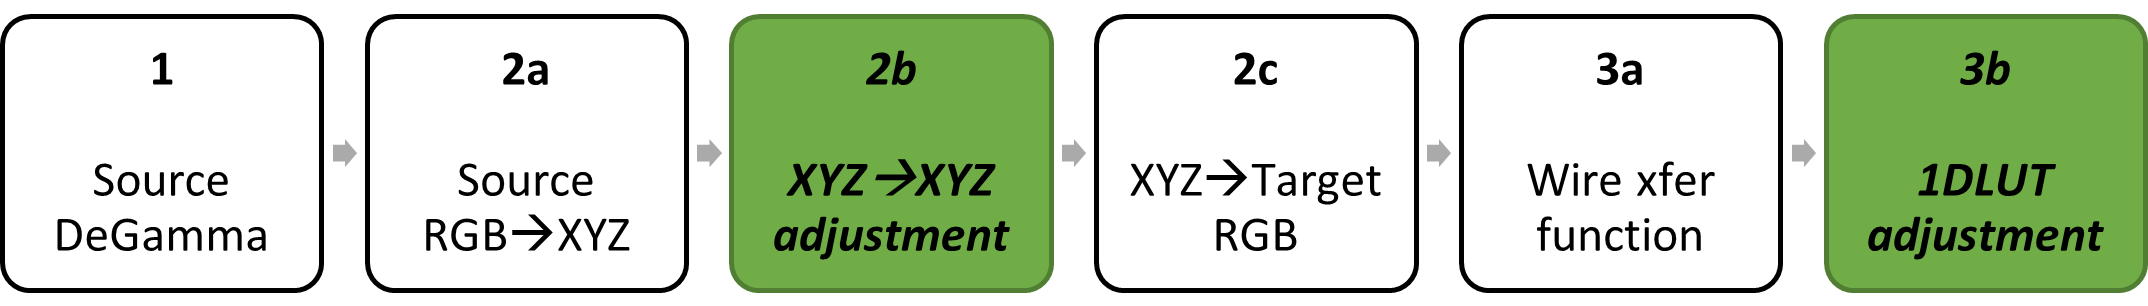 блок-схема: исходная дегамма; цветовая матрица разложена на исходный RGB для XYZ, XYZ на XYZ и XYZ для целевого RGB; целевая regamma, разложенная в функцию передачи данных, корректировка 1DLUT